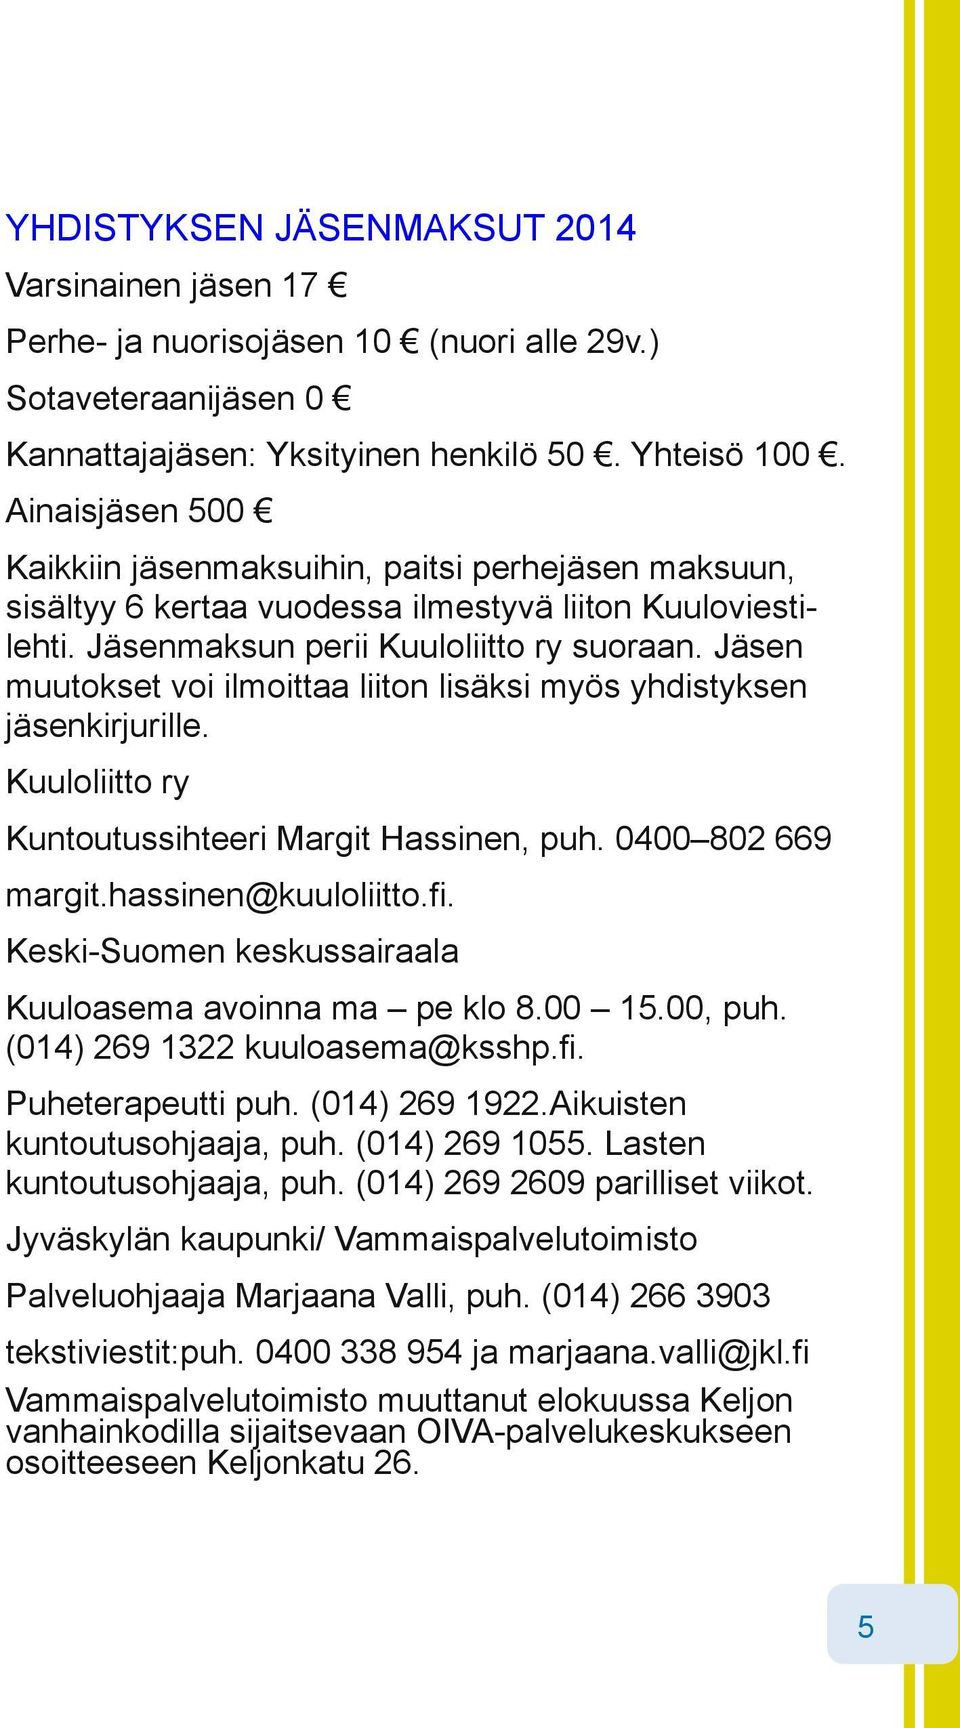 Jäsen muutokset voi ilmoittaa liiton lisäksi myös yhdistyksen jäsenkirjurille. Kuuloliitto ry Kuntoutussihteeri Margit Hassinen, puh. 0400 802 669 margit.hassinen@kuuloliitto.fi.